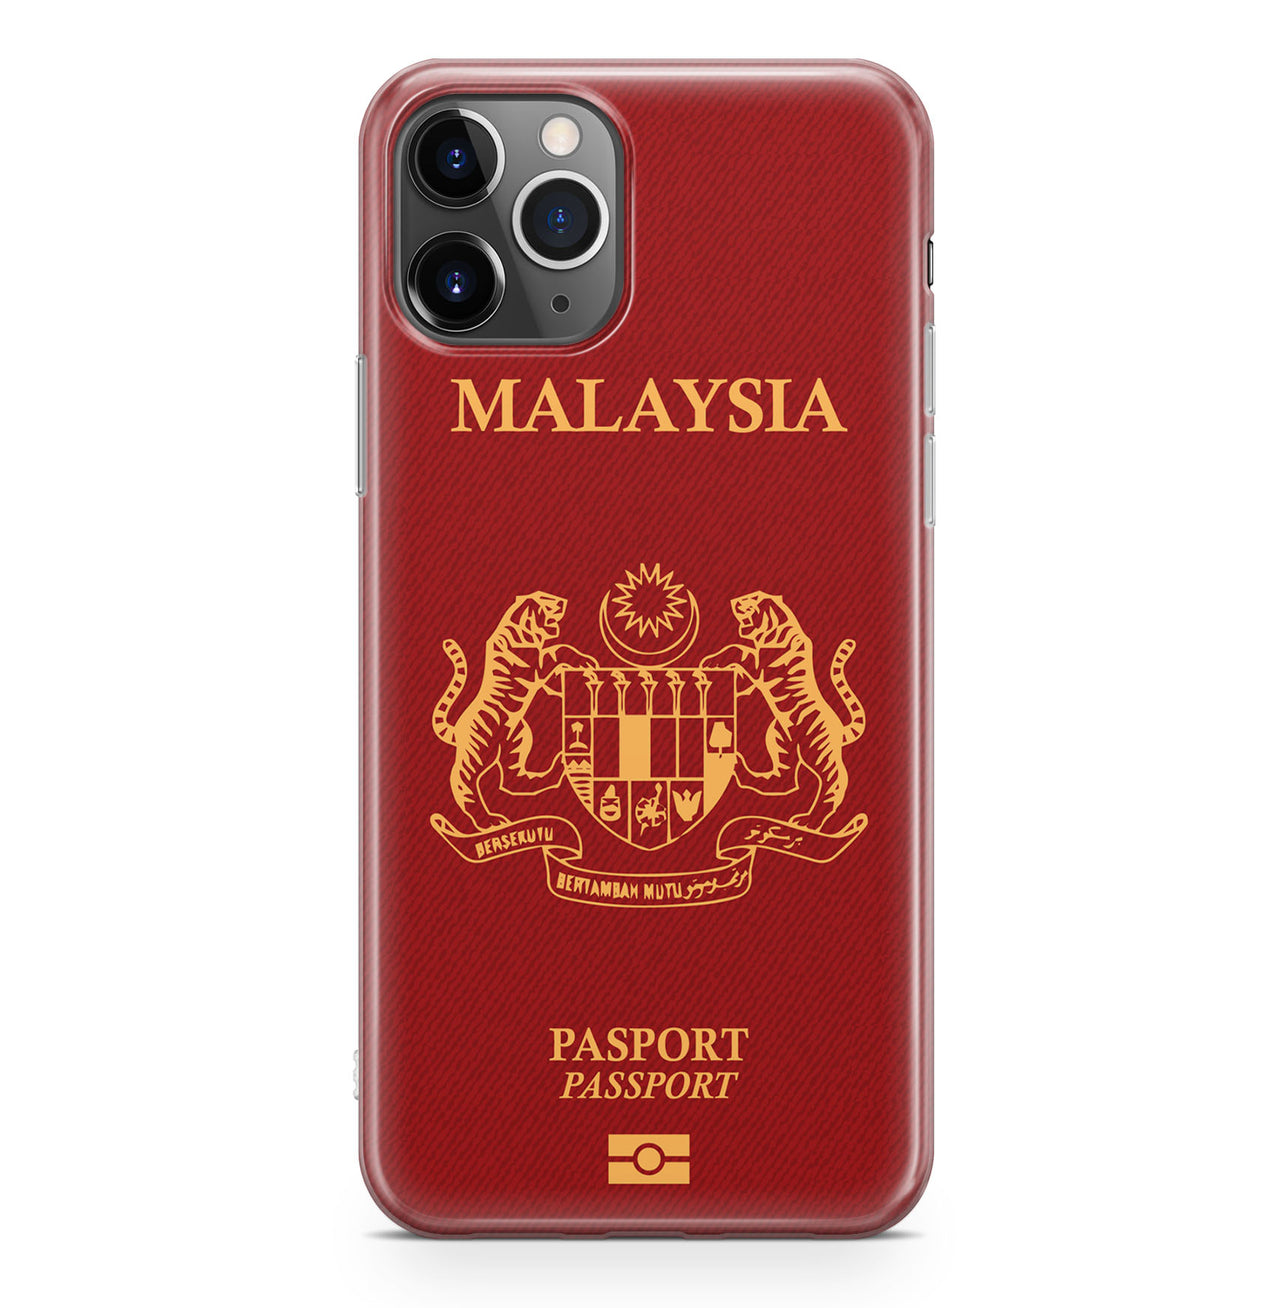 Malaysia Passport Designed iPhone Cases